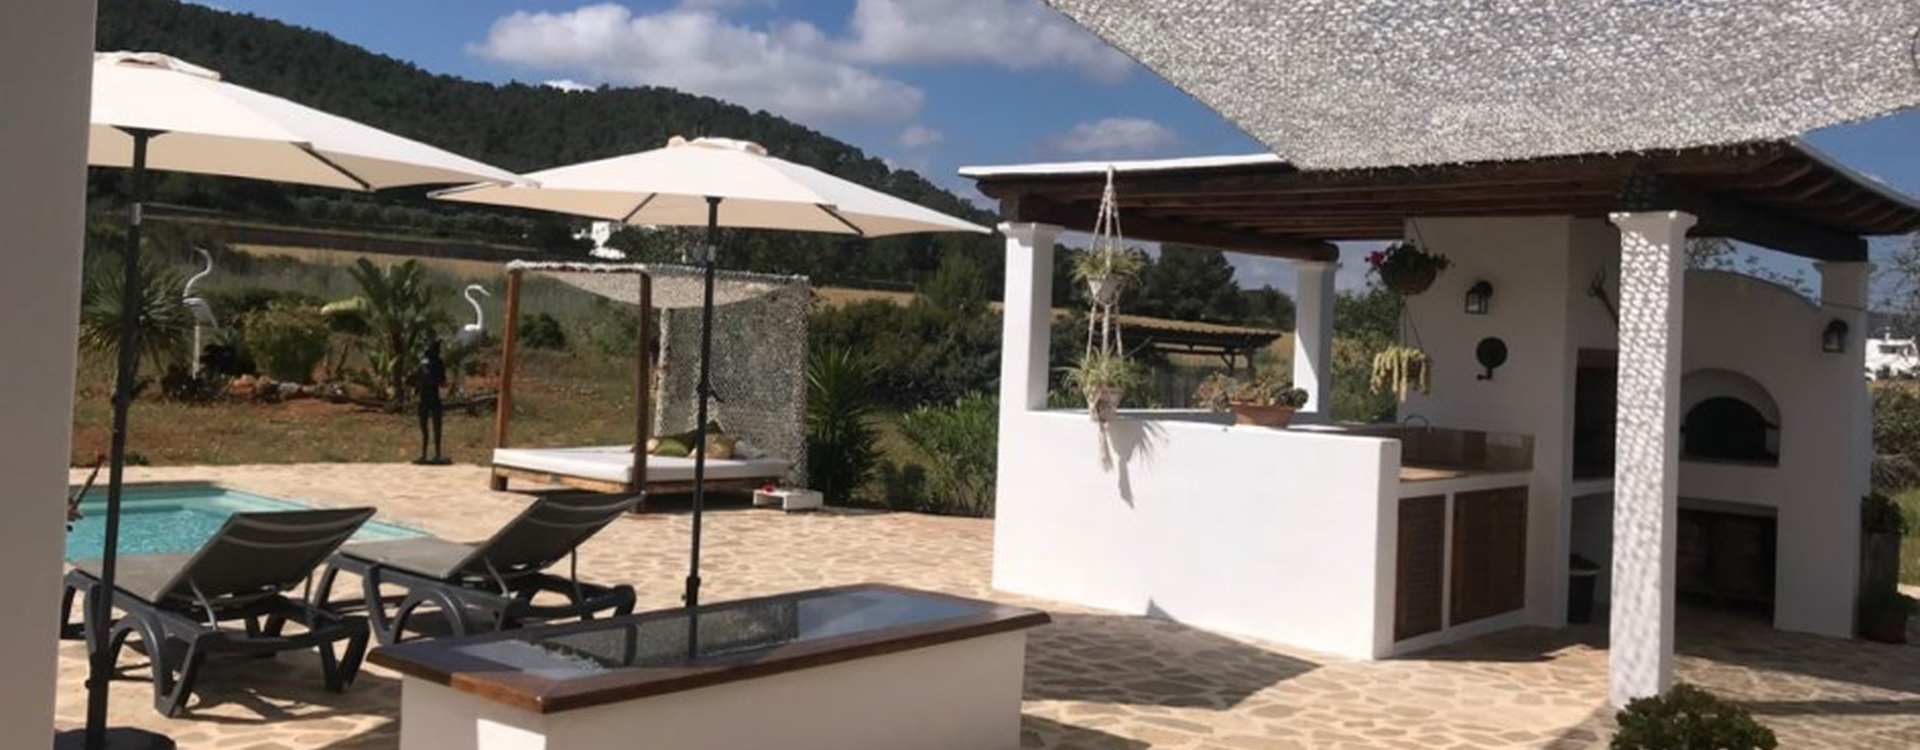 Villa Finca Gertrudis te huur op Ibiza - Terras